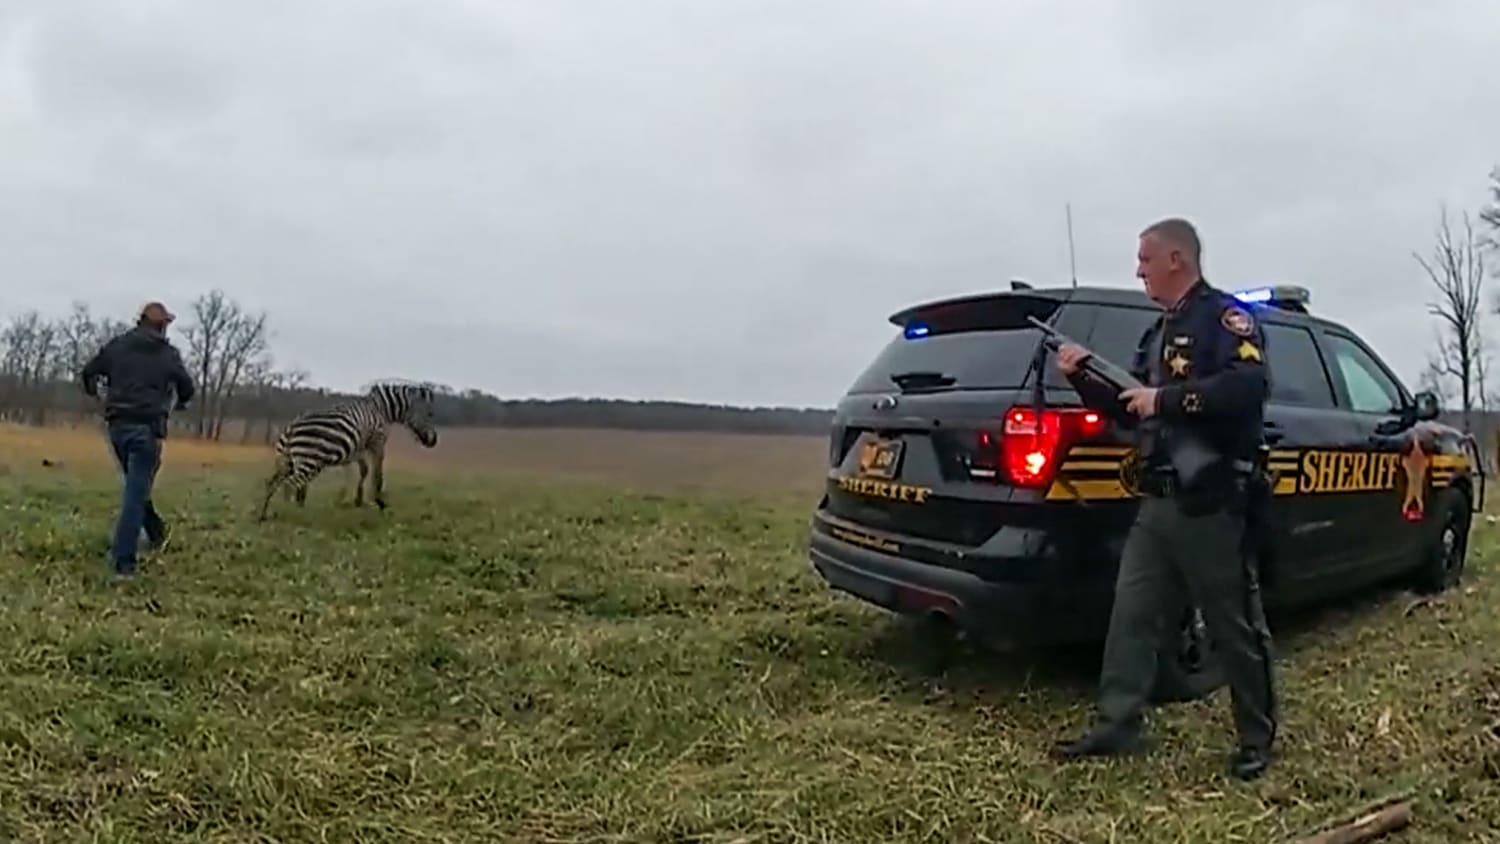 Ohio man nearly loses arm in zebra attack at farm